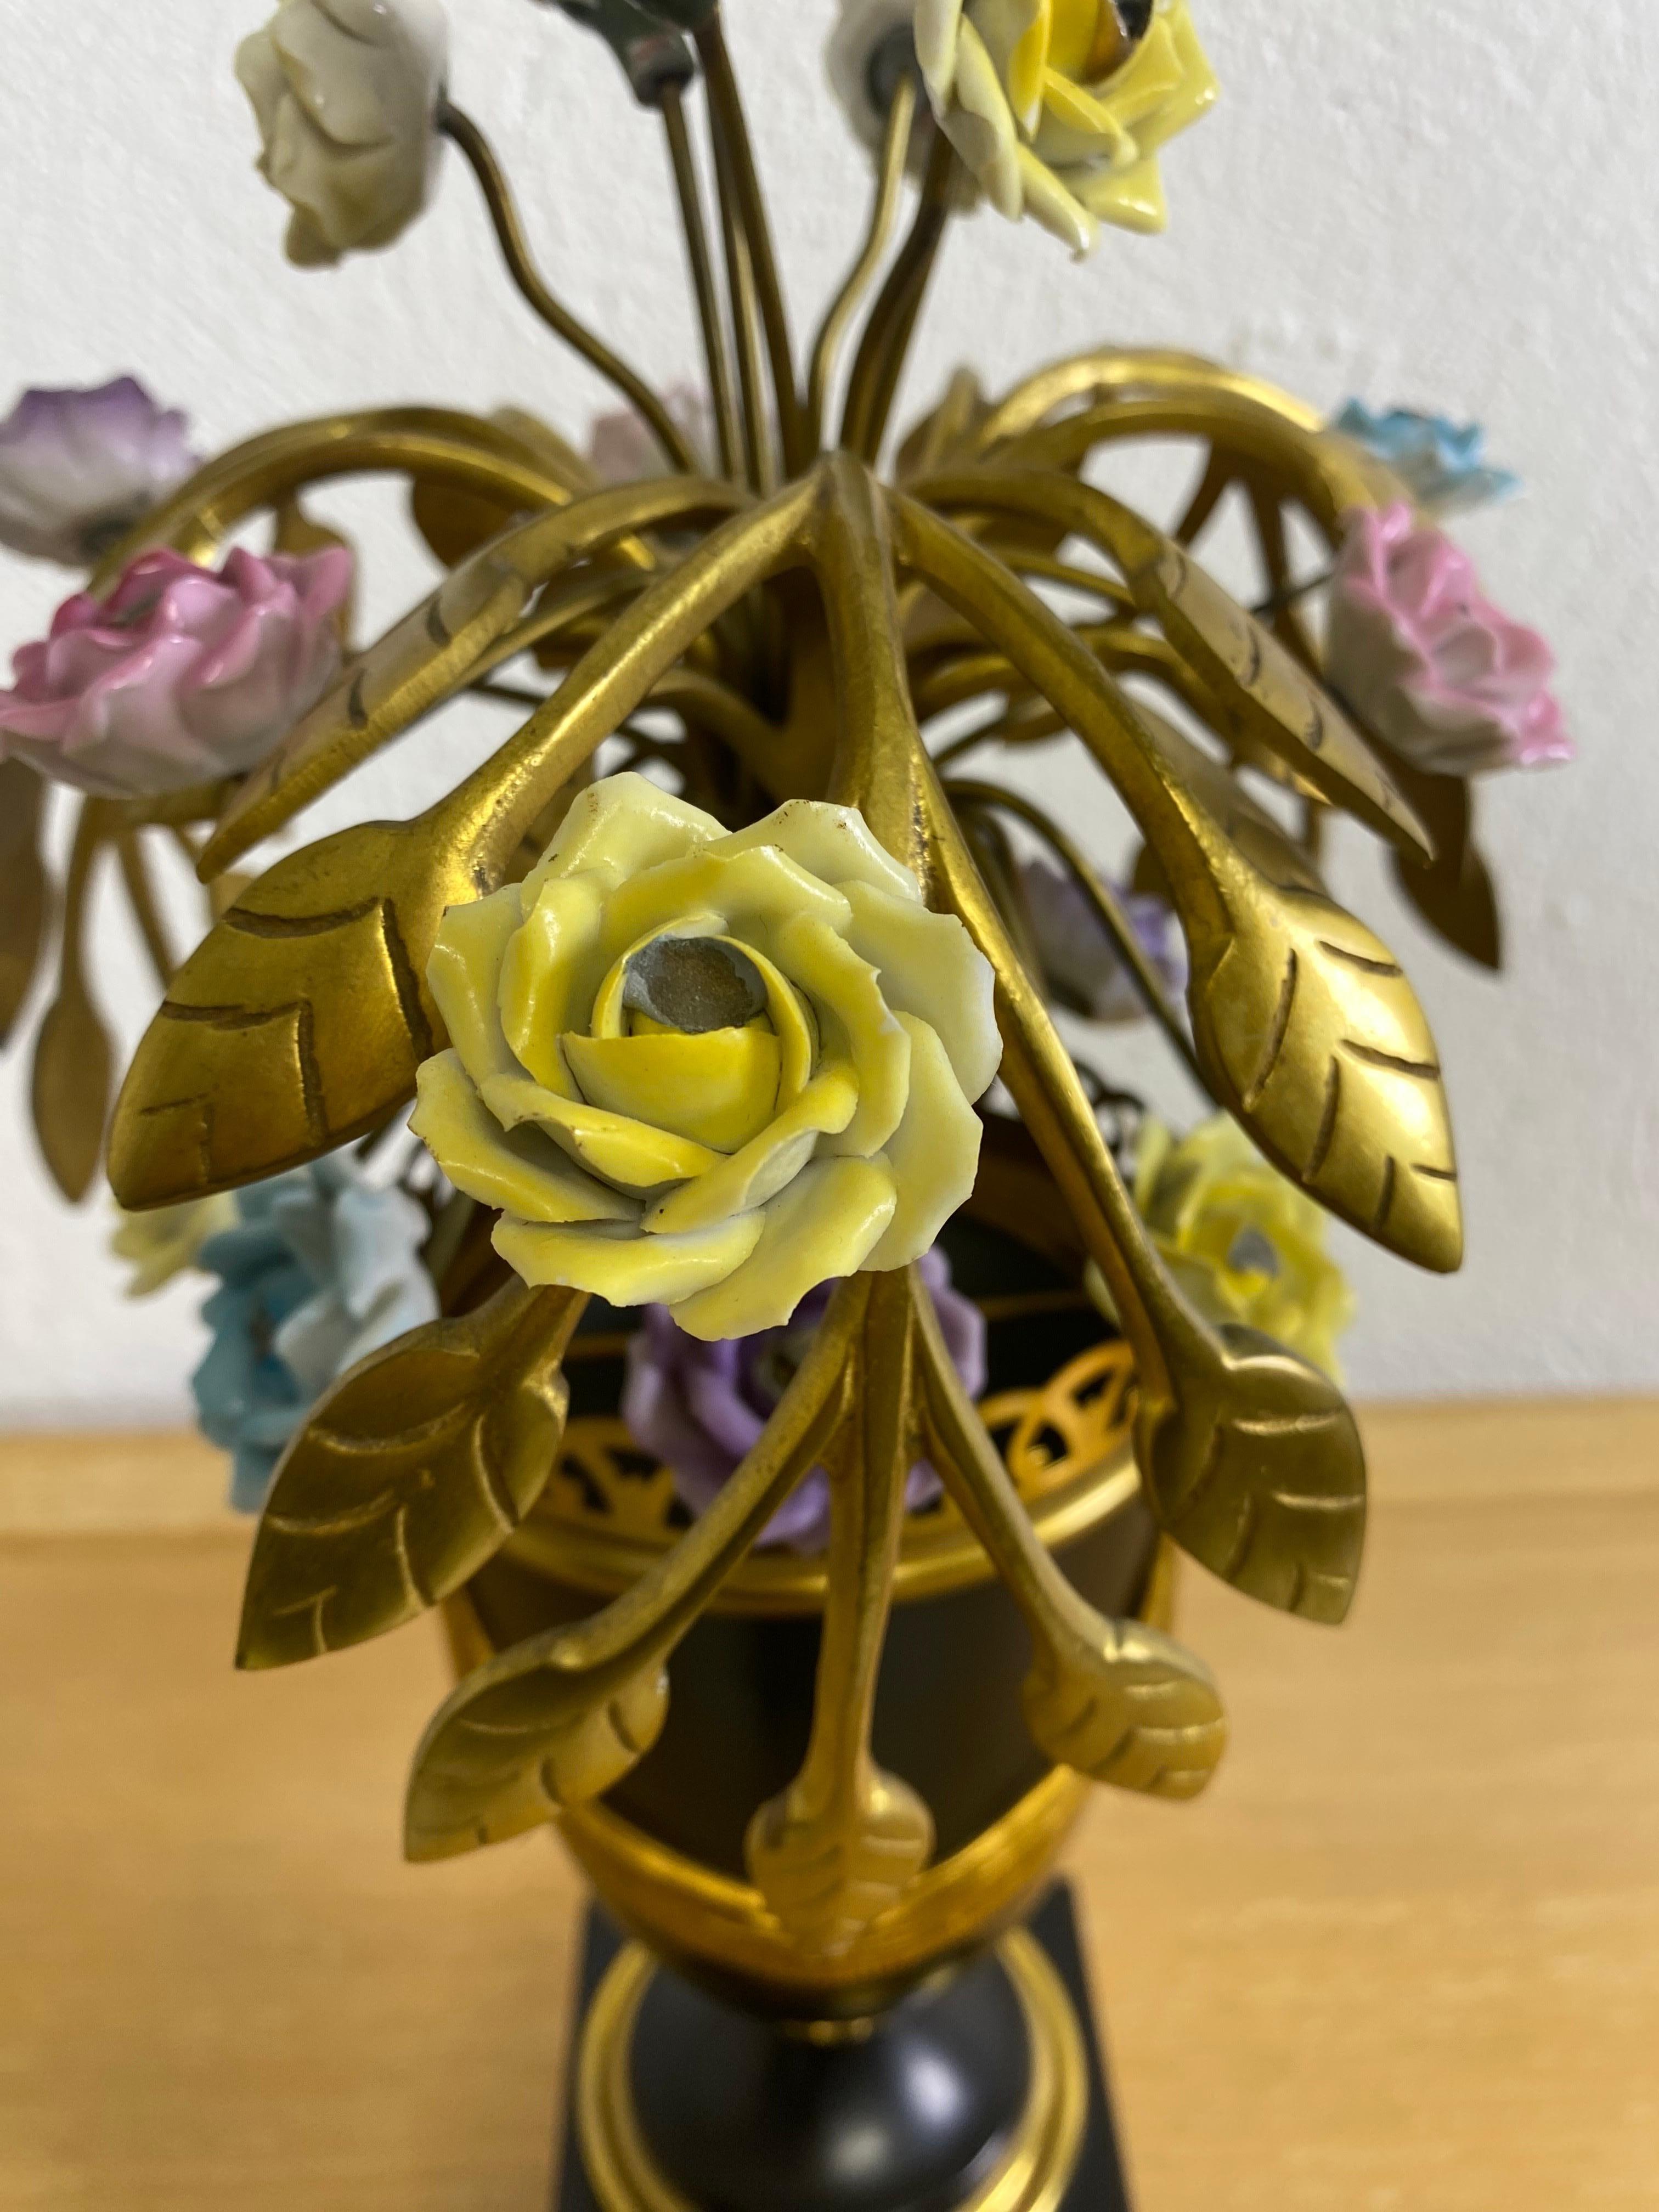 Dies ist ein Mid-Century Vintage Italienisch gemacht Dekorateur Tischlampe. Die Tischleuchte zeigt ein botanisch inspiriertes Blumenbouquet mit handgefertigten Porzellanblumen, eingebettet in ein Blattdesign aus Messing. Der Sockel und die Urne sind